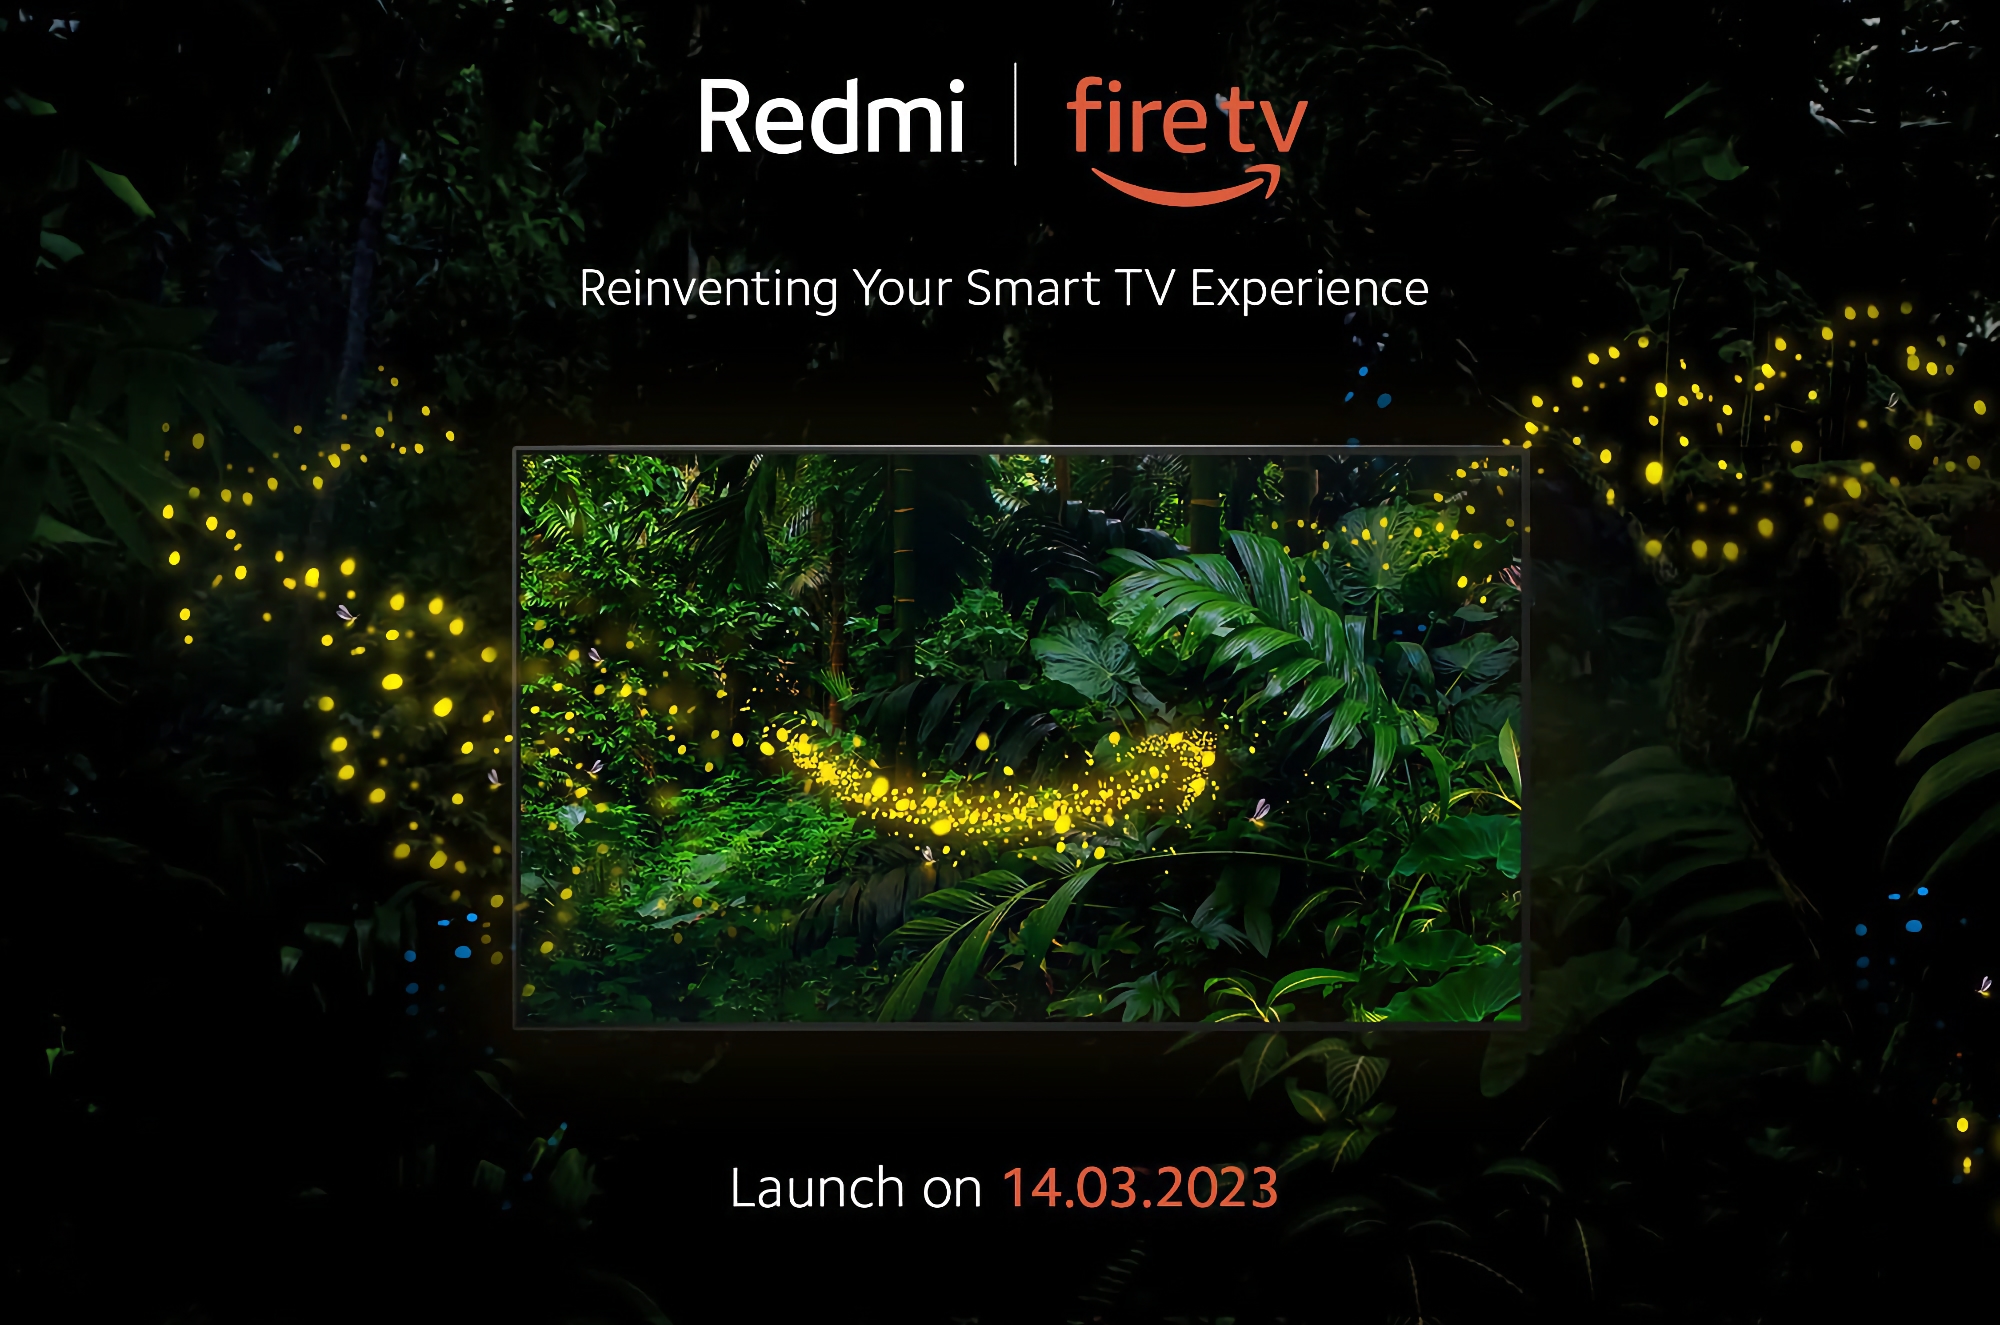 Xiaomi 14 березня представить перший смарт-телевізор Redmi з Fire OS на борту та підтримкою Amazon Alexa